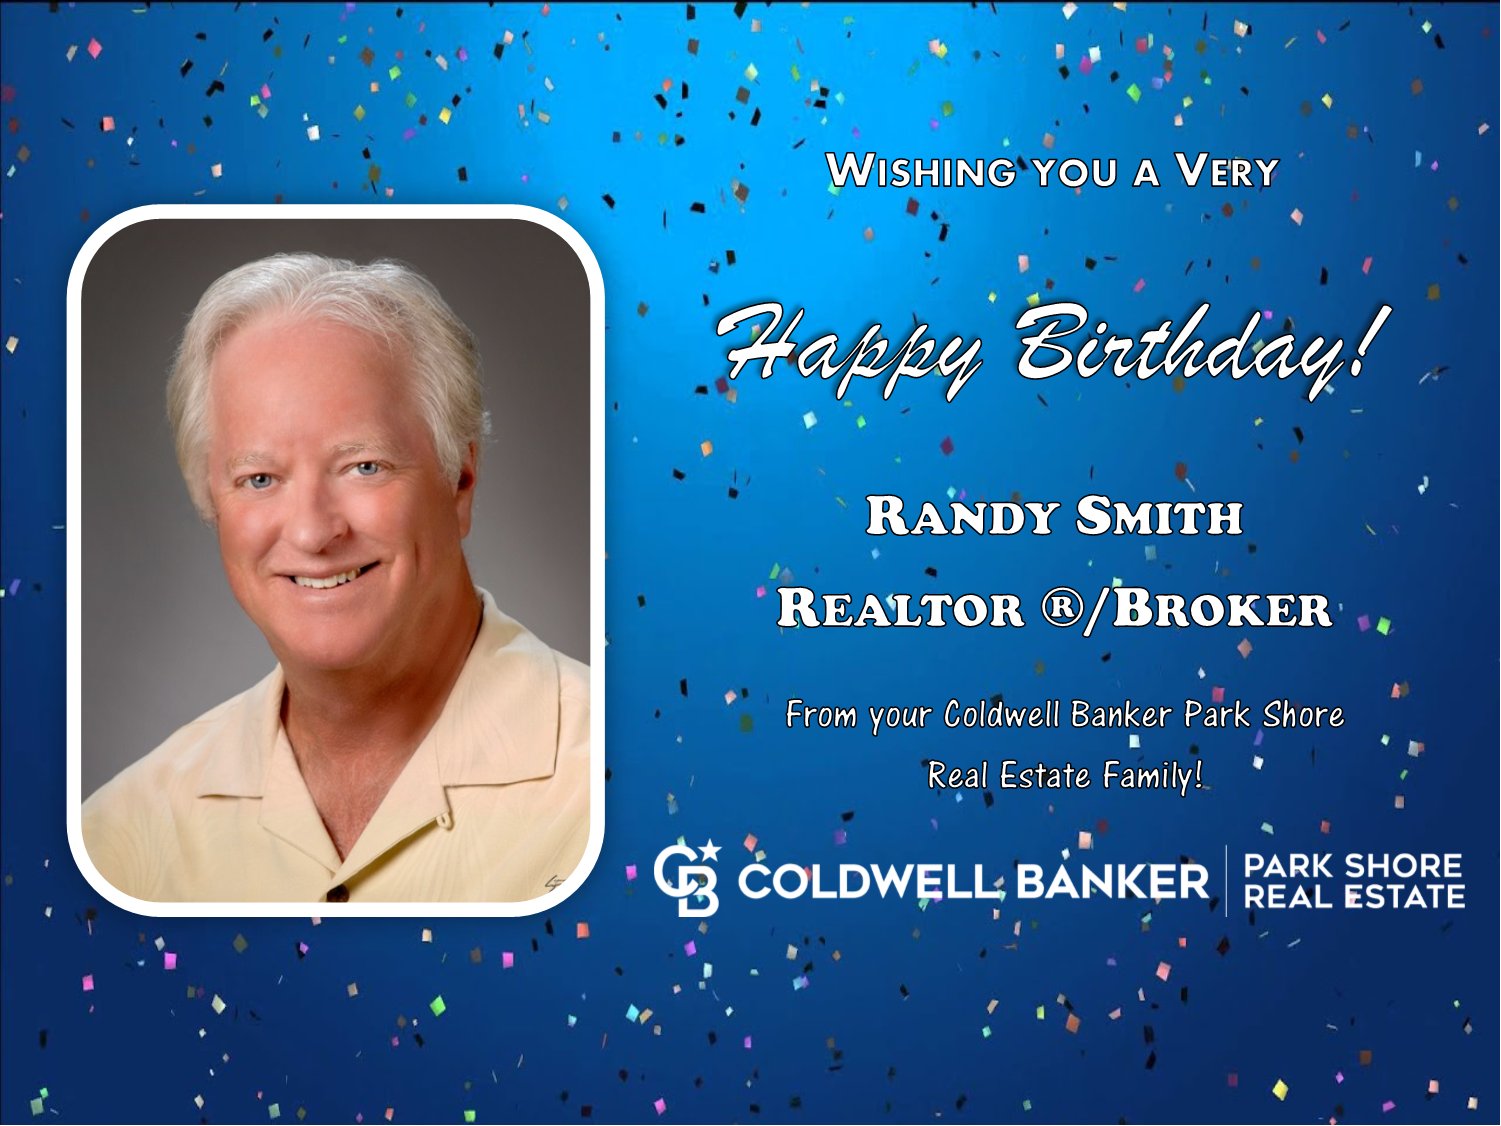 We wish you a Happy Birthday Randy Smith! 